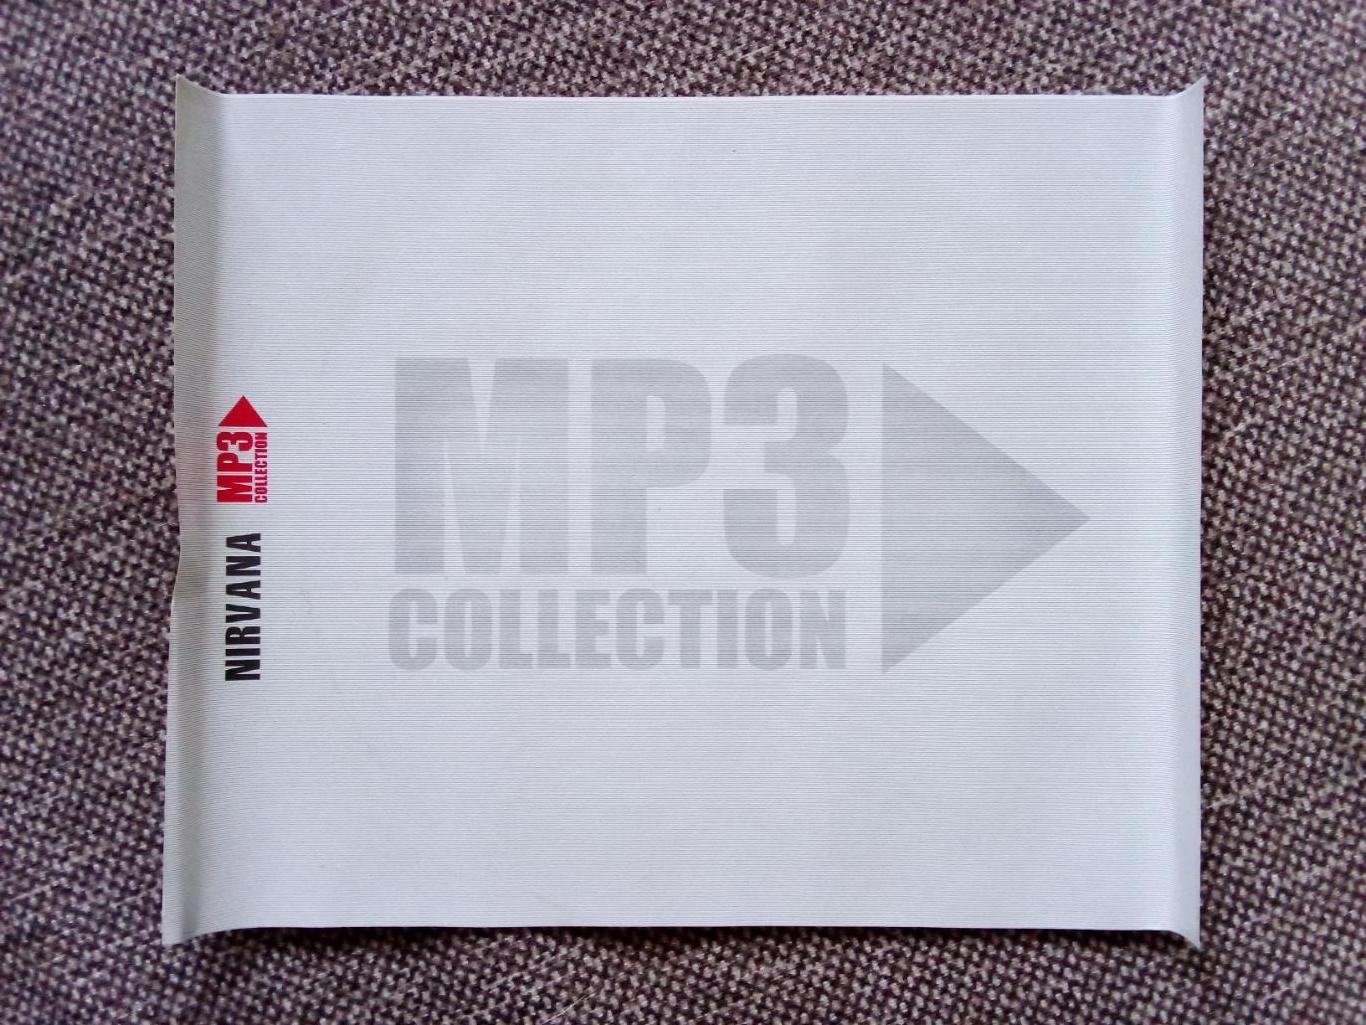 CD MP - 3 диск : группа Мастер 1987 - 1999 гг. (6 альбомов) лицензия (Метал) 6